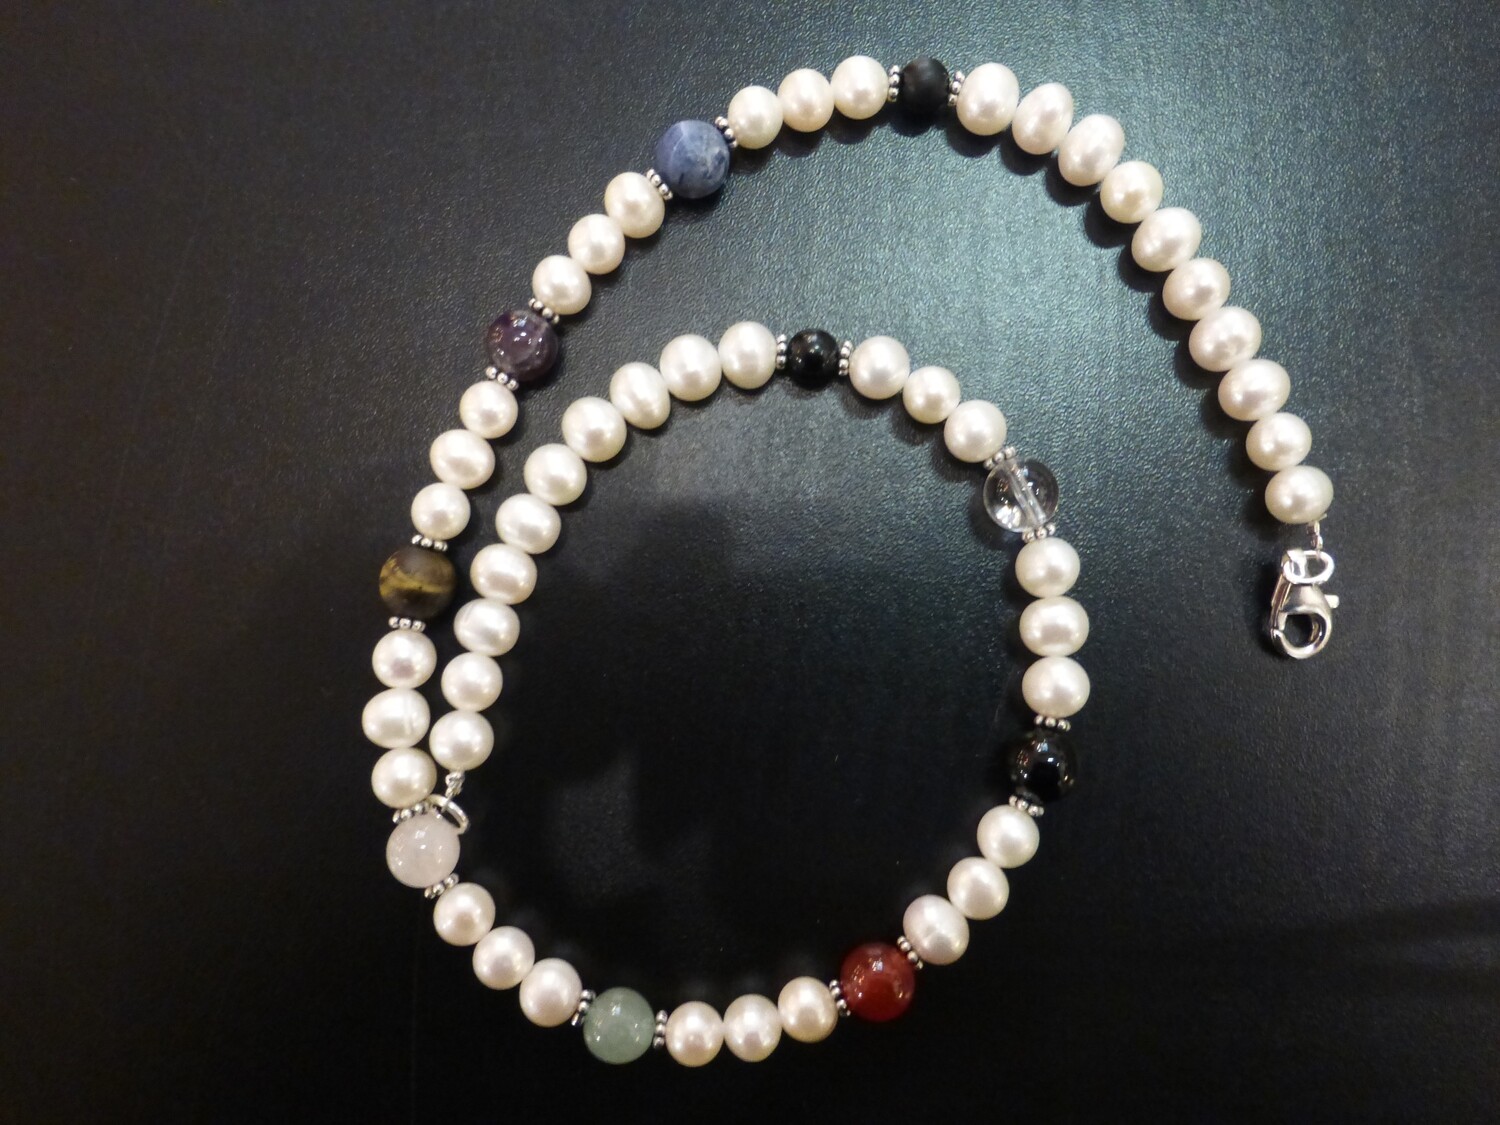 Collier tour de cou en perles d'eau douce, fleurs en argent et pierres des chakras. Longueur 44 cm